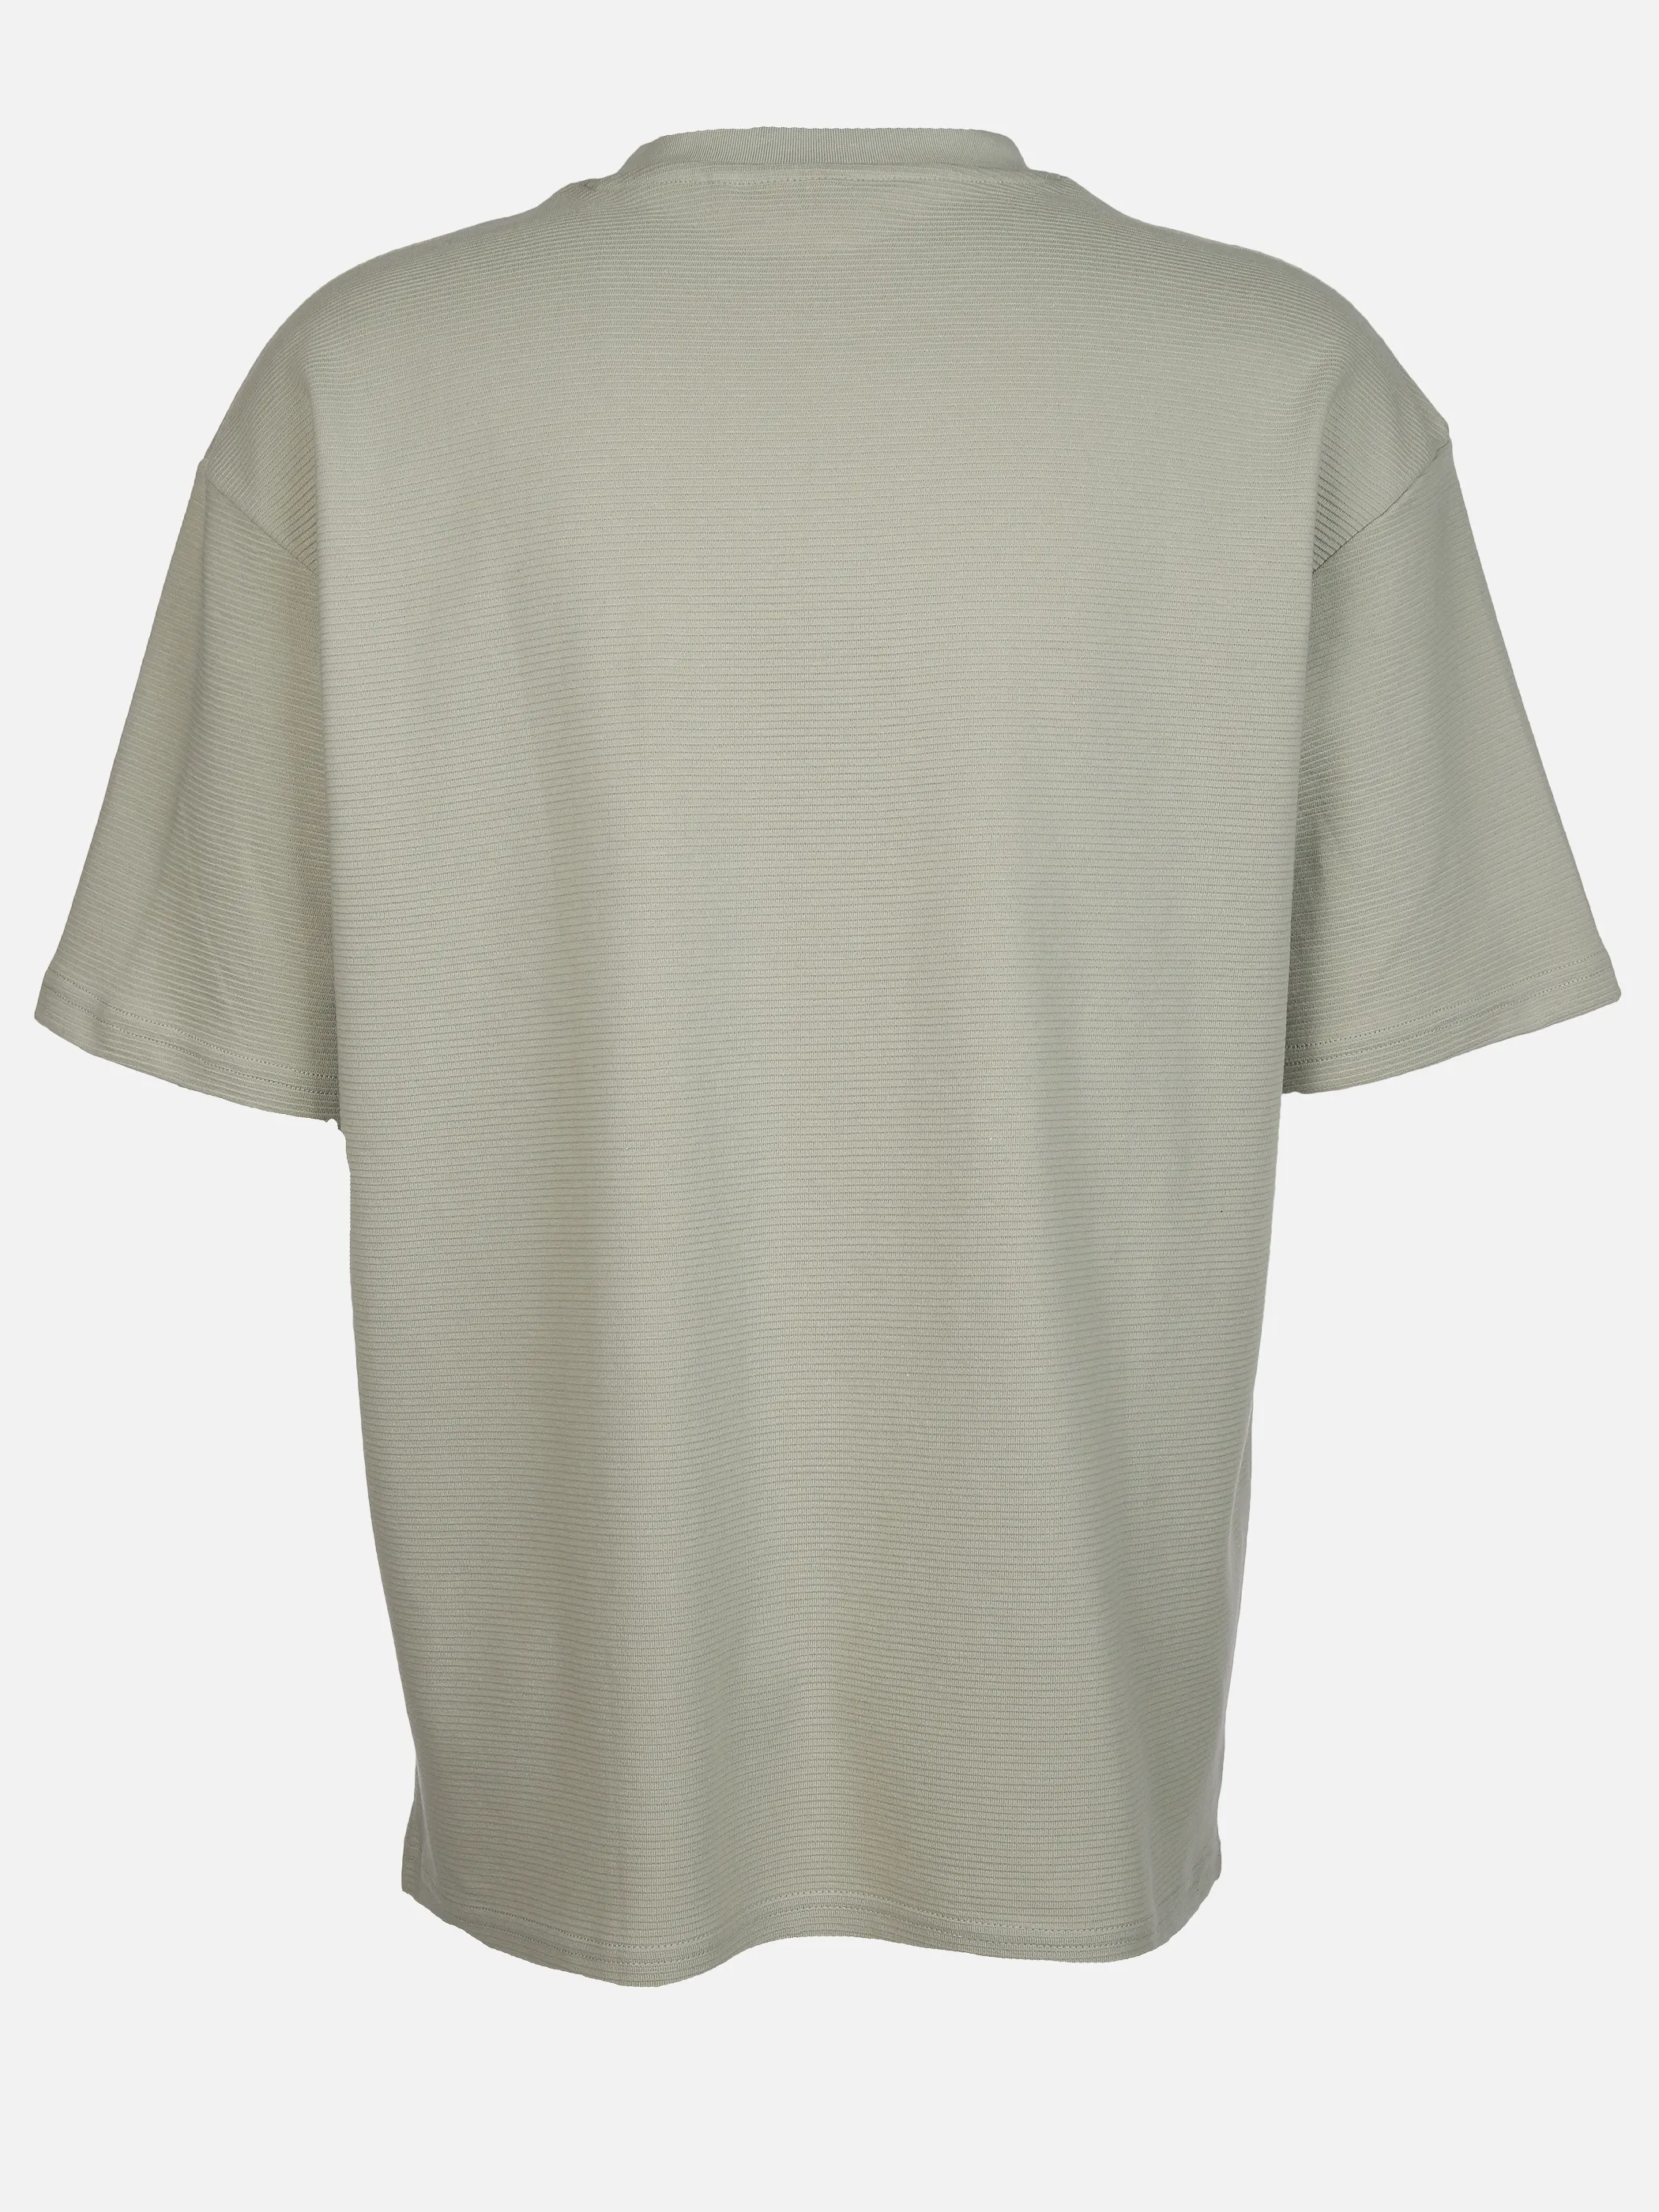 IX-O YF-He- T-Shirt Relaxed Fit Grün 891819 SALBEI 2